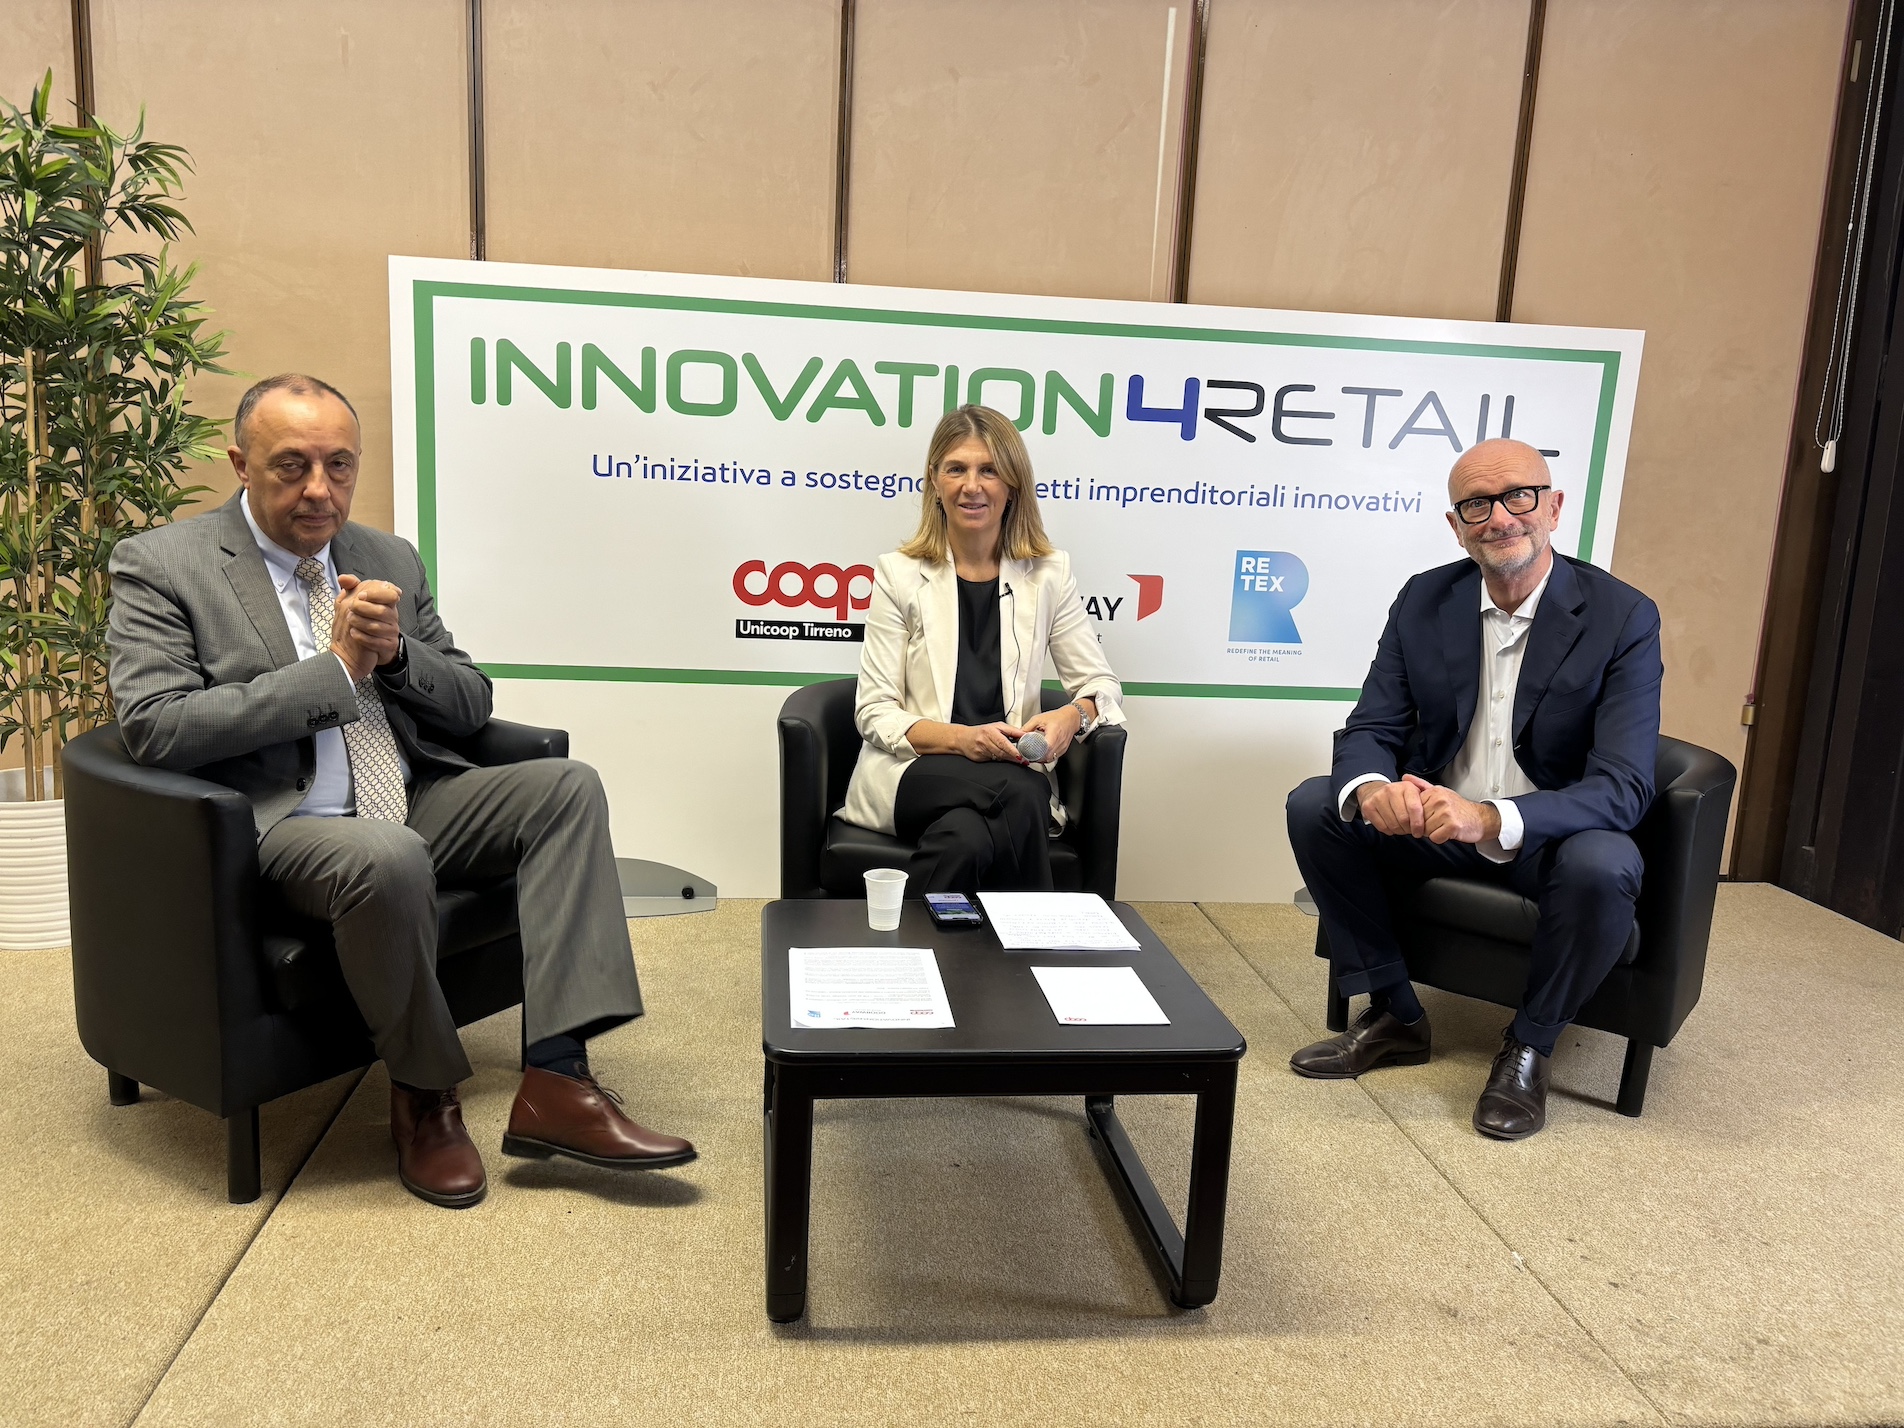 Unicoop Tirreno guarda al futuro e lancia “Innovation4Retail”, per selezionare e supportare le idee più innovative e sostenibili per il Retail.